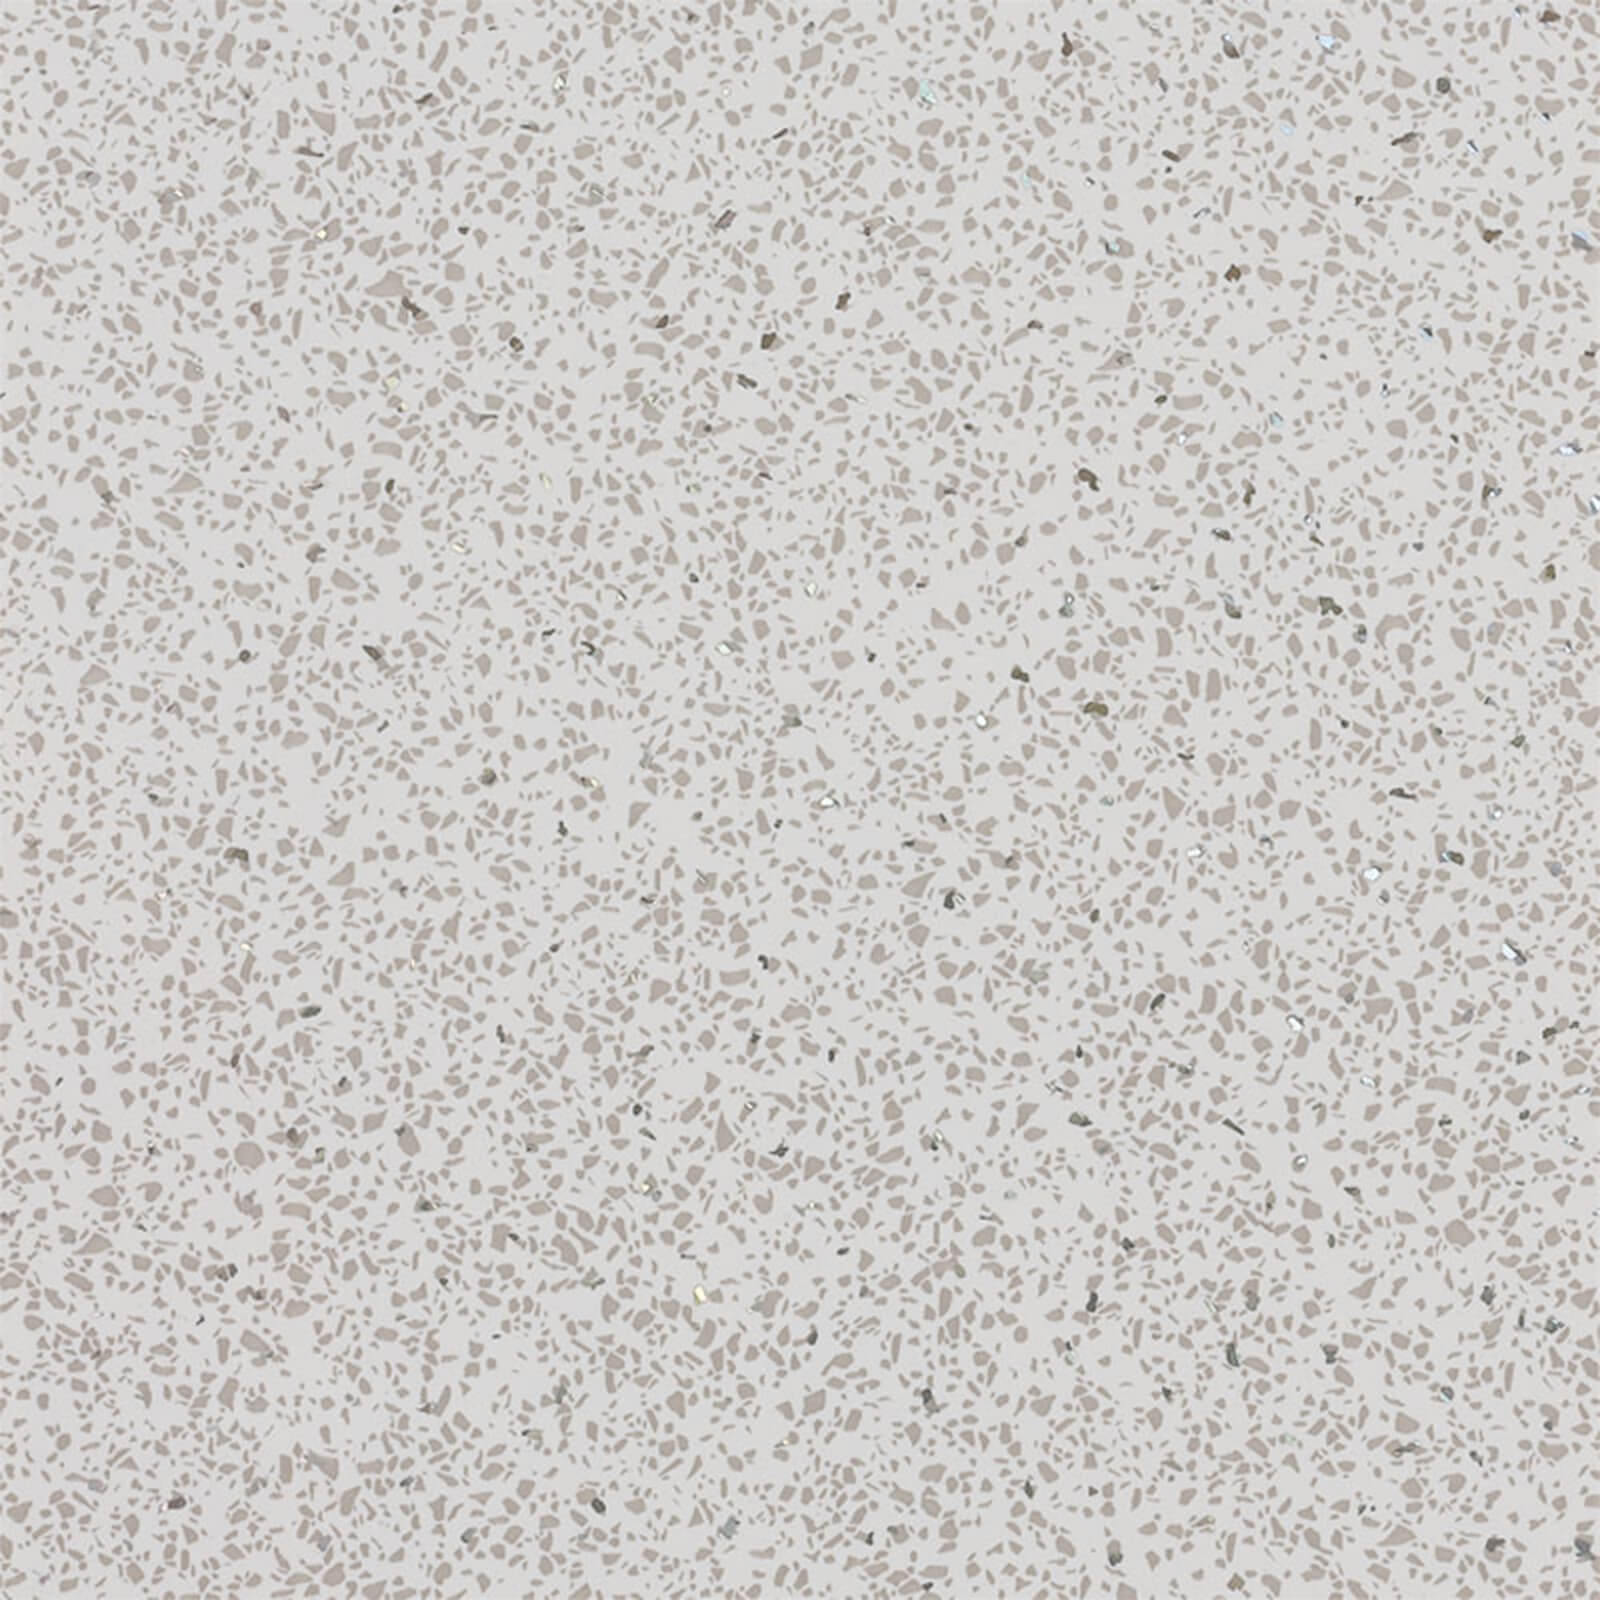 Photo of Pvc Panel 2400x1000x10mm - White Diamond Stone